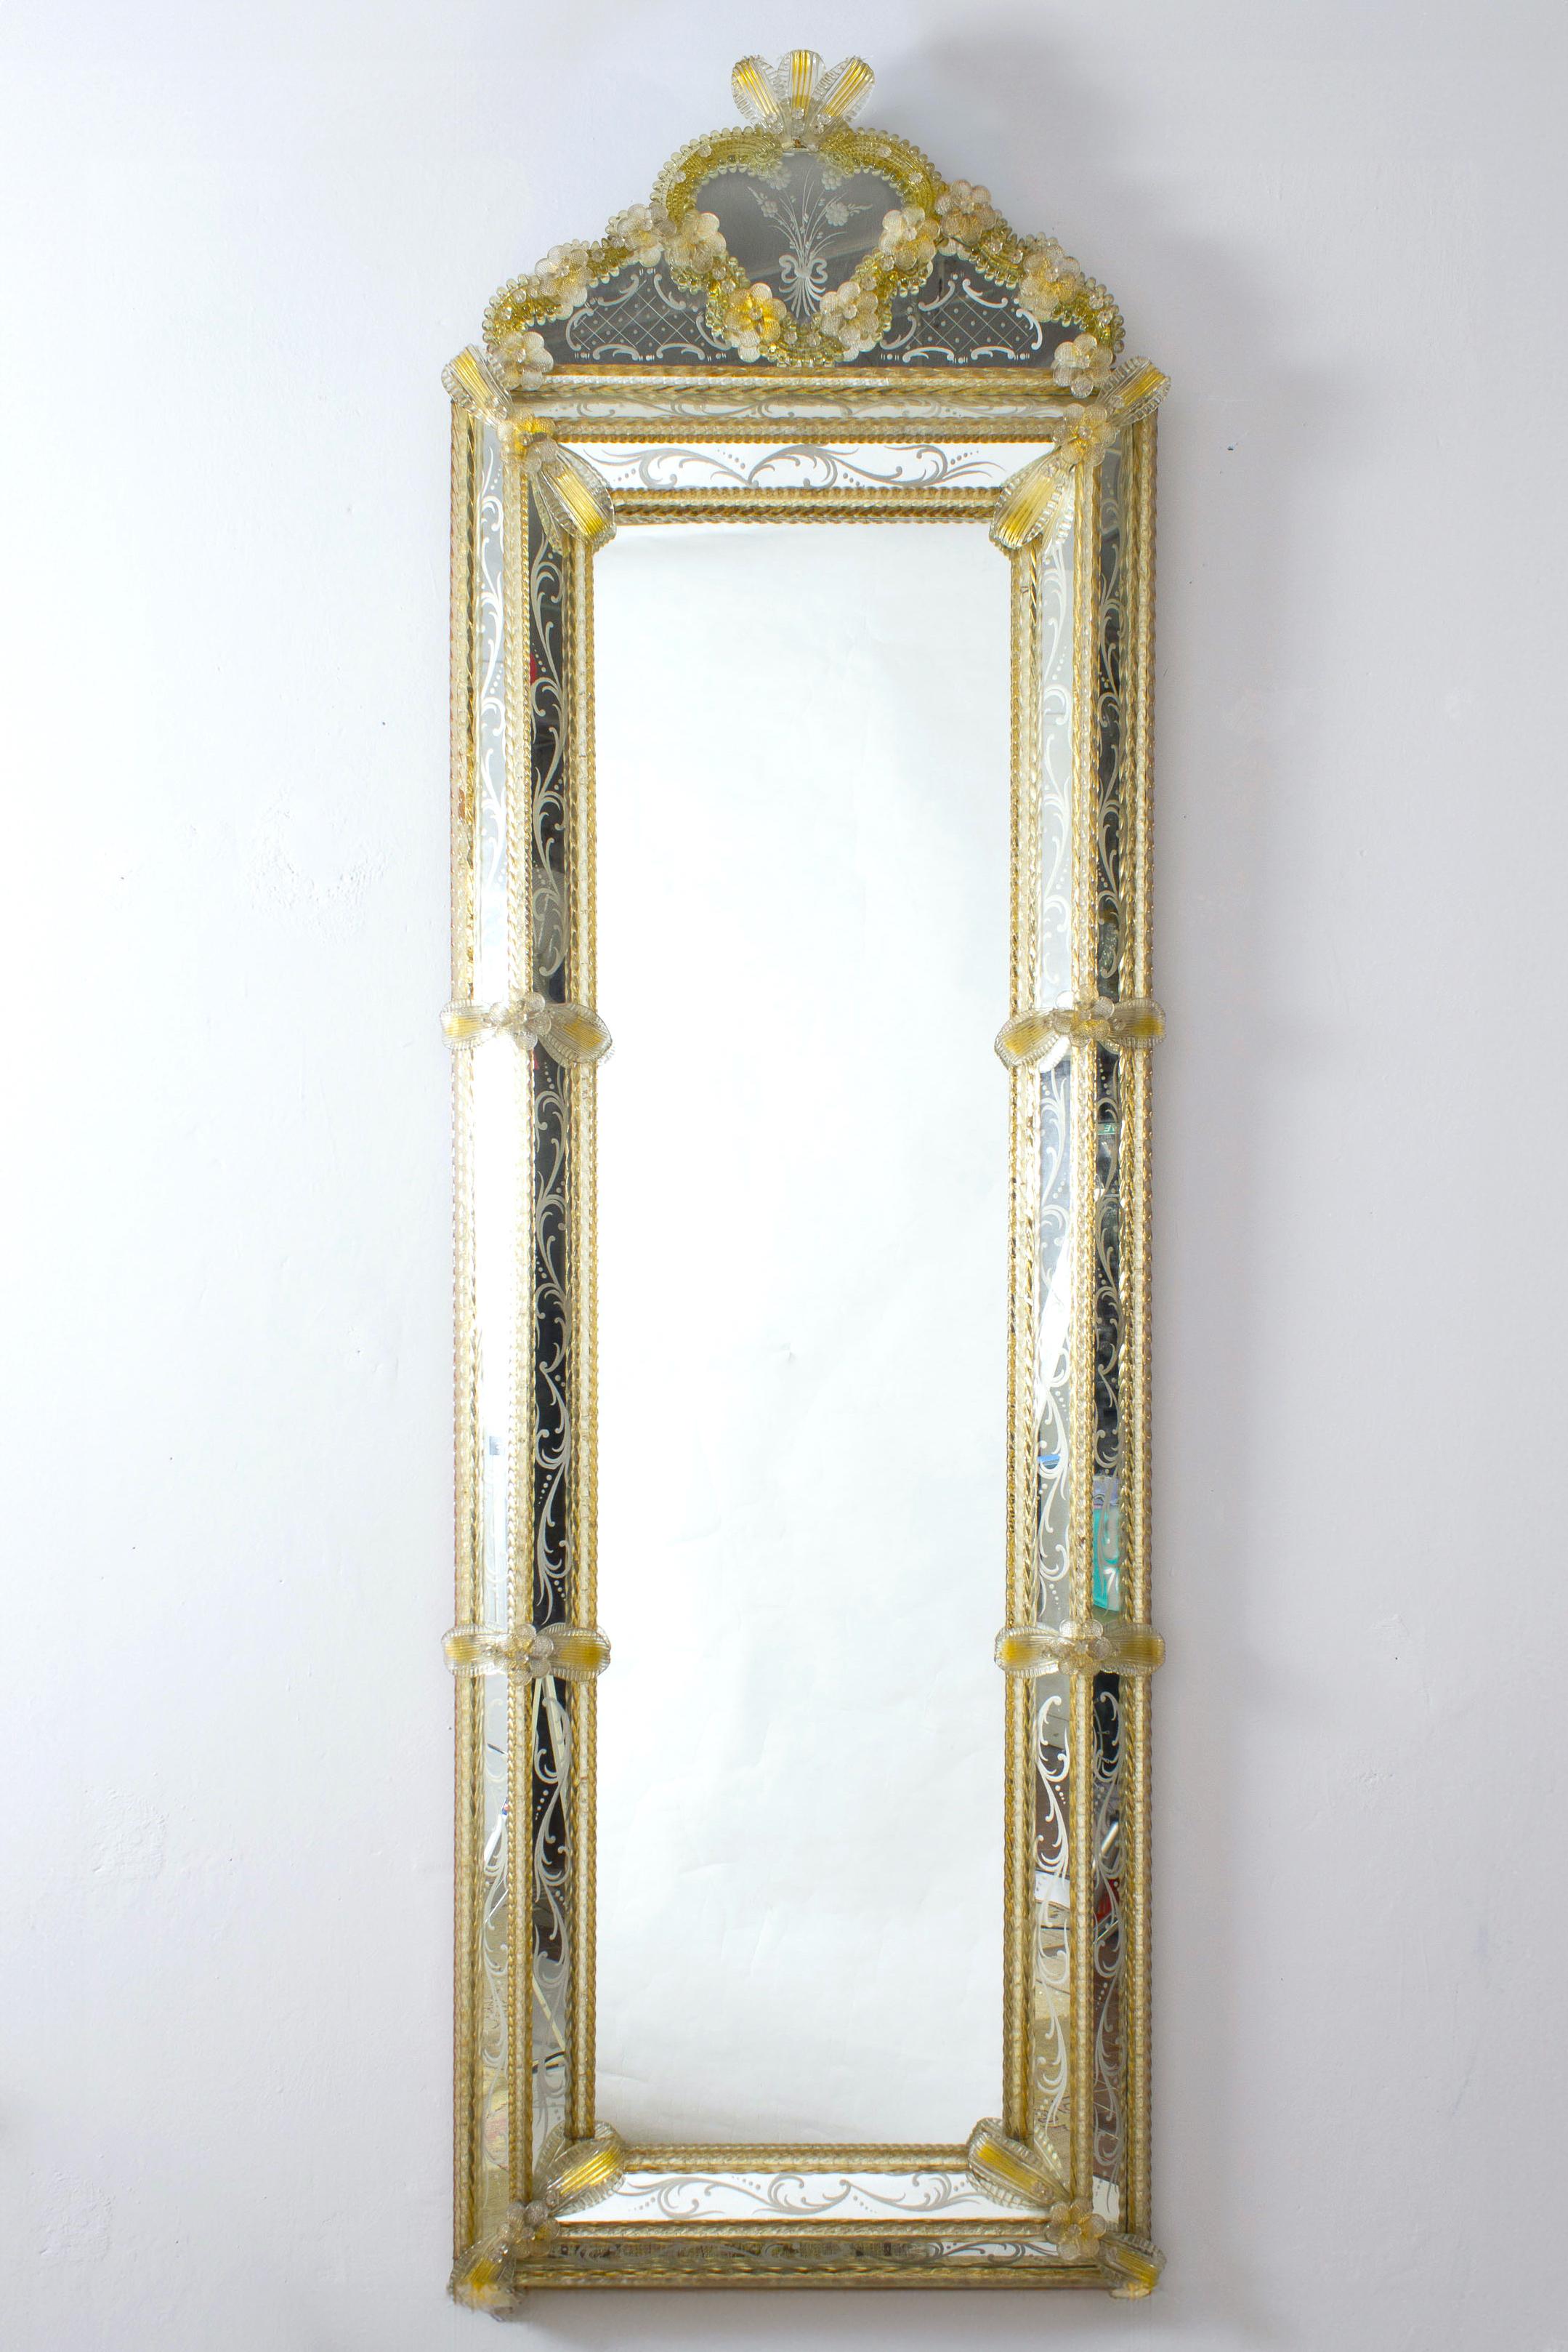 Ce magnifique miroir vénitien présente des motifs floraux gravés qui ornent le cadre du miroir. Le long des bords du cadre se trouvent des accents de corde en verre doré et de nombreuses fleurs en verre. 
Excellent état vintage.